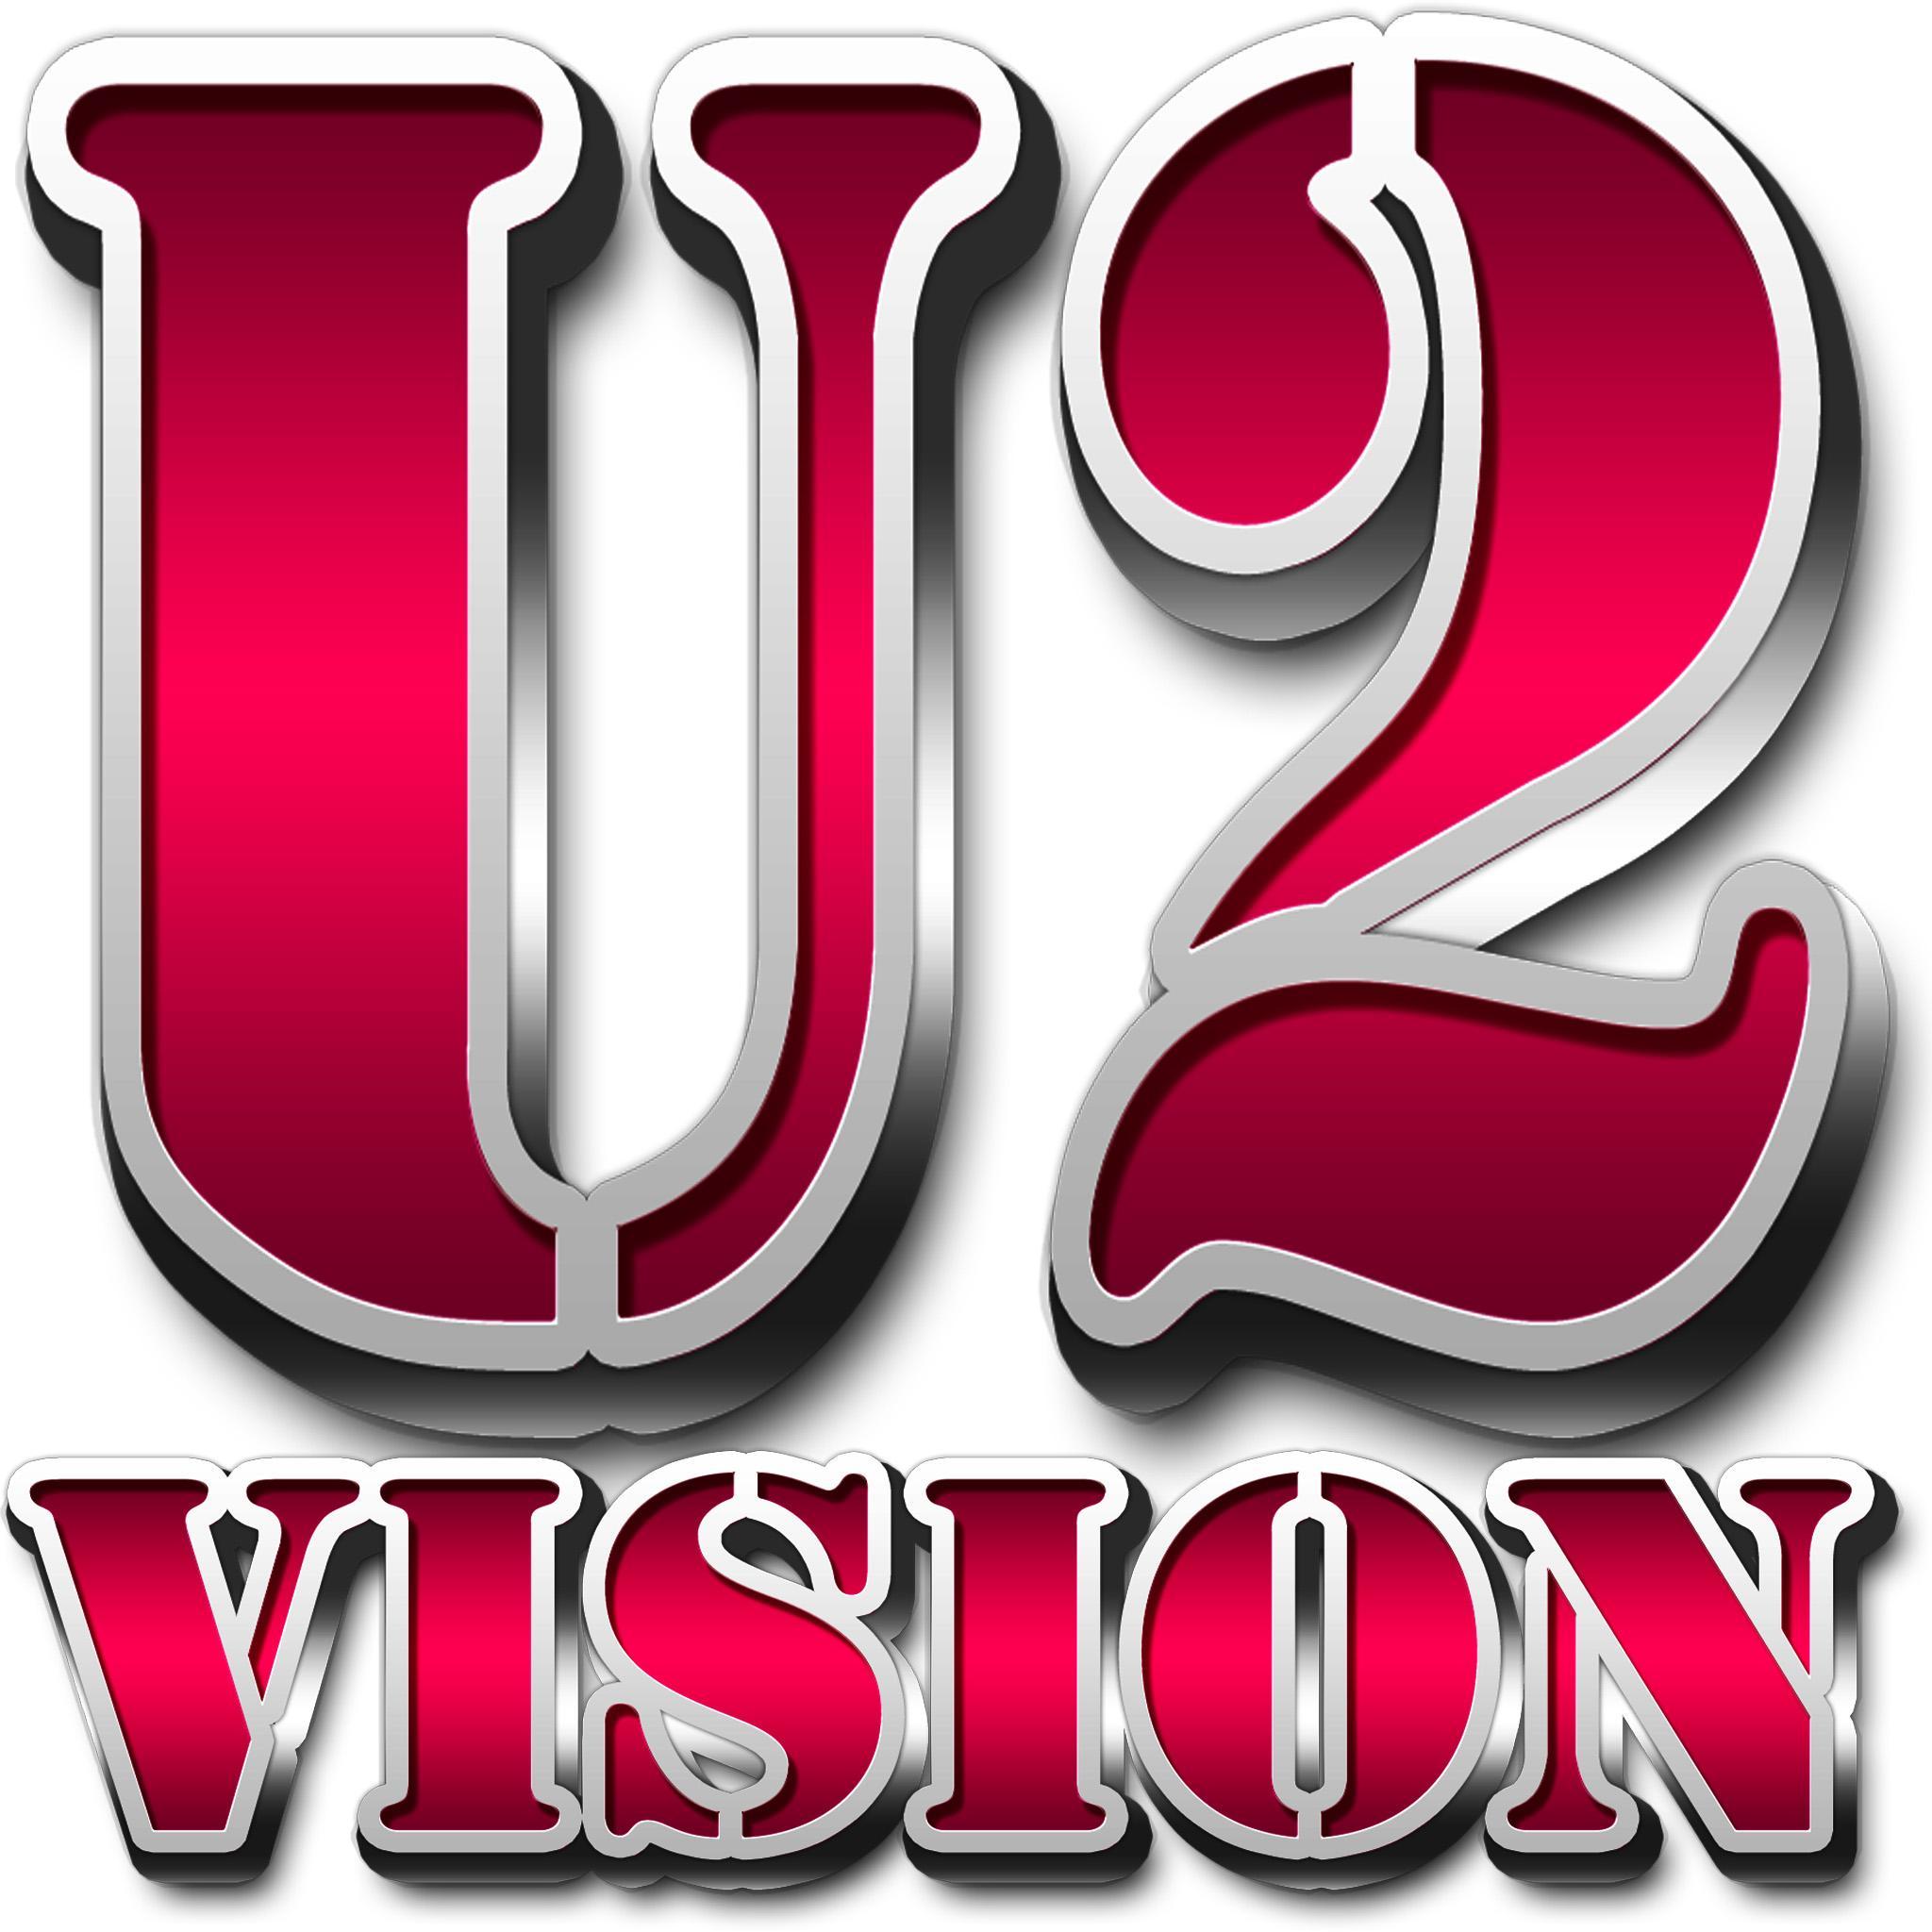 U2_Vision Profile Picture